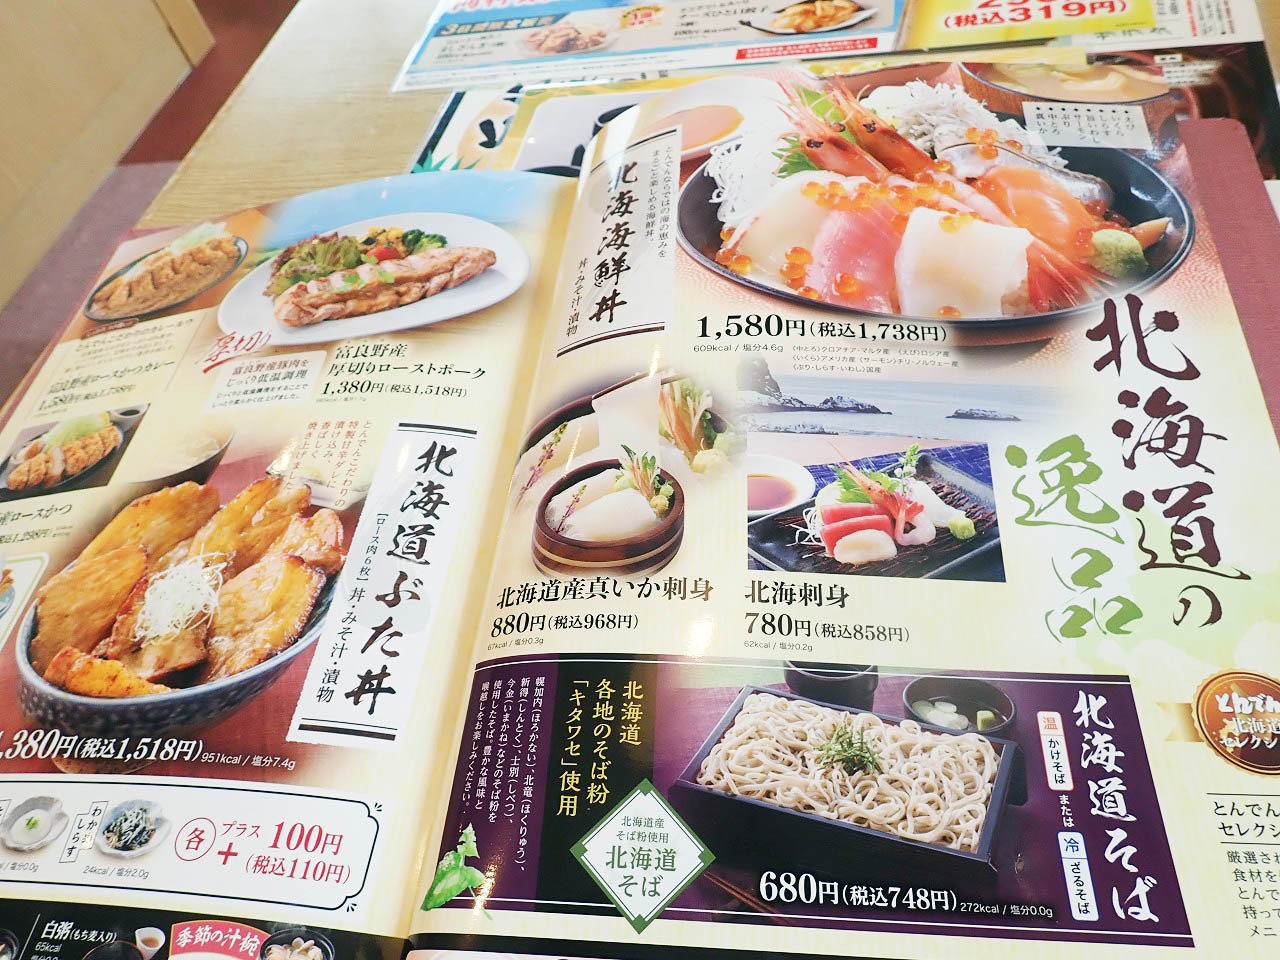 北海道生まれのファミレスということで北海道の食材を使った品が多いのが特徴です